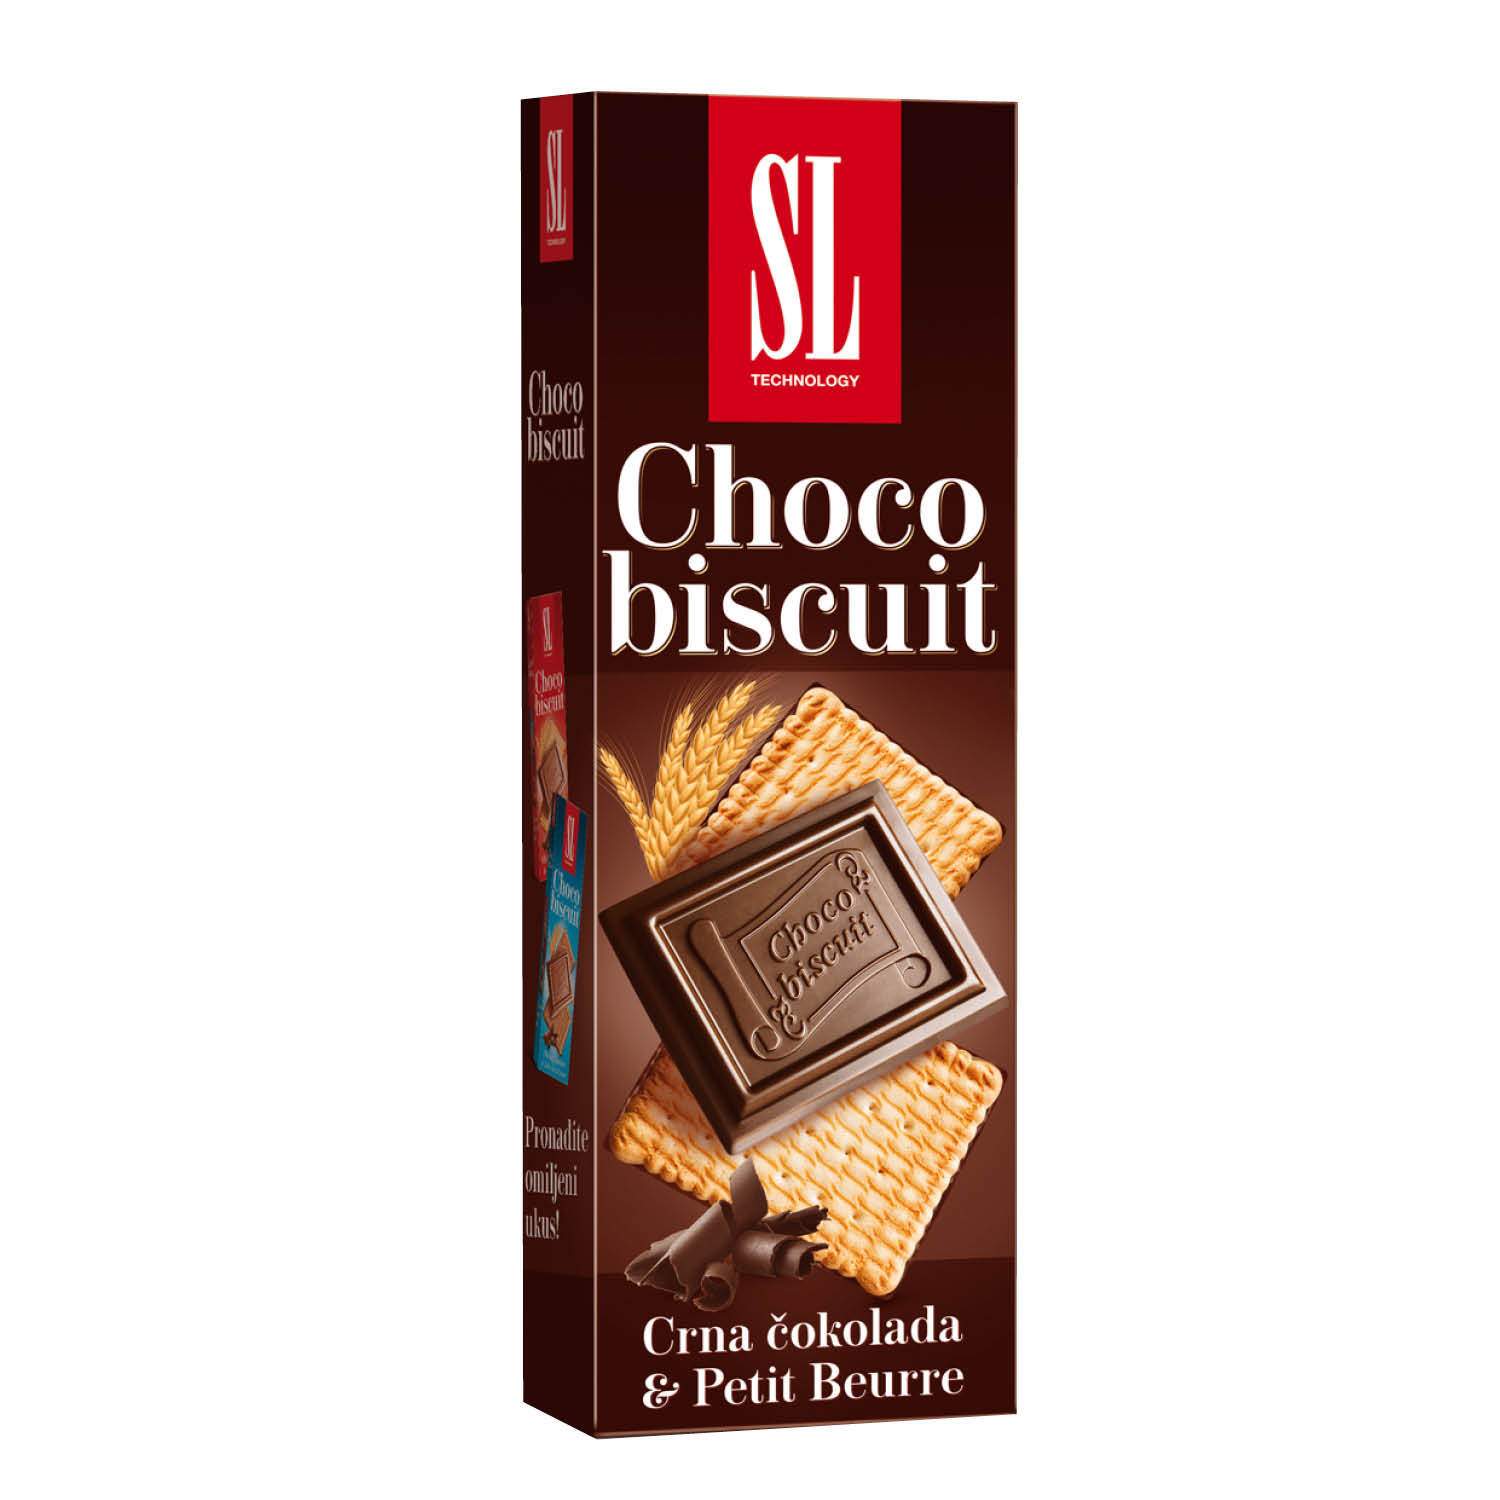 Choco black. Шоколад черный принц. Шоколад Choco Biscuit, 300 г. Черный принц шоколадка. Конфеты с черным шоколадом.